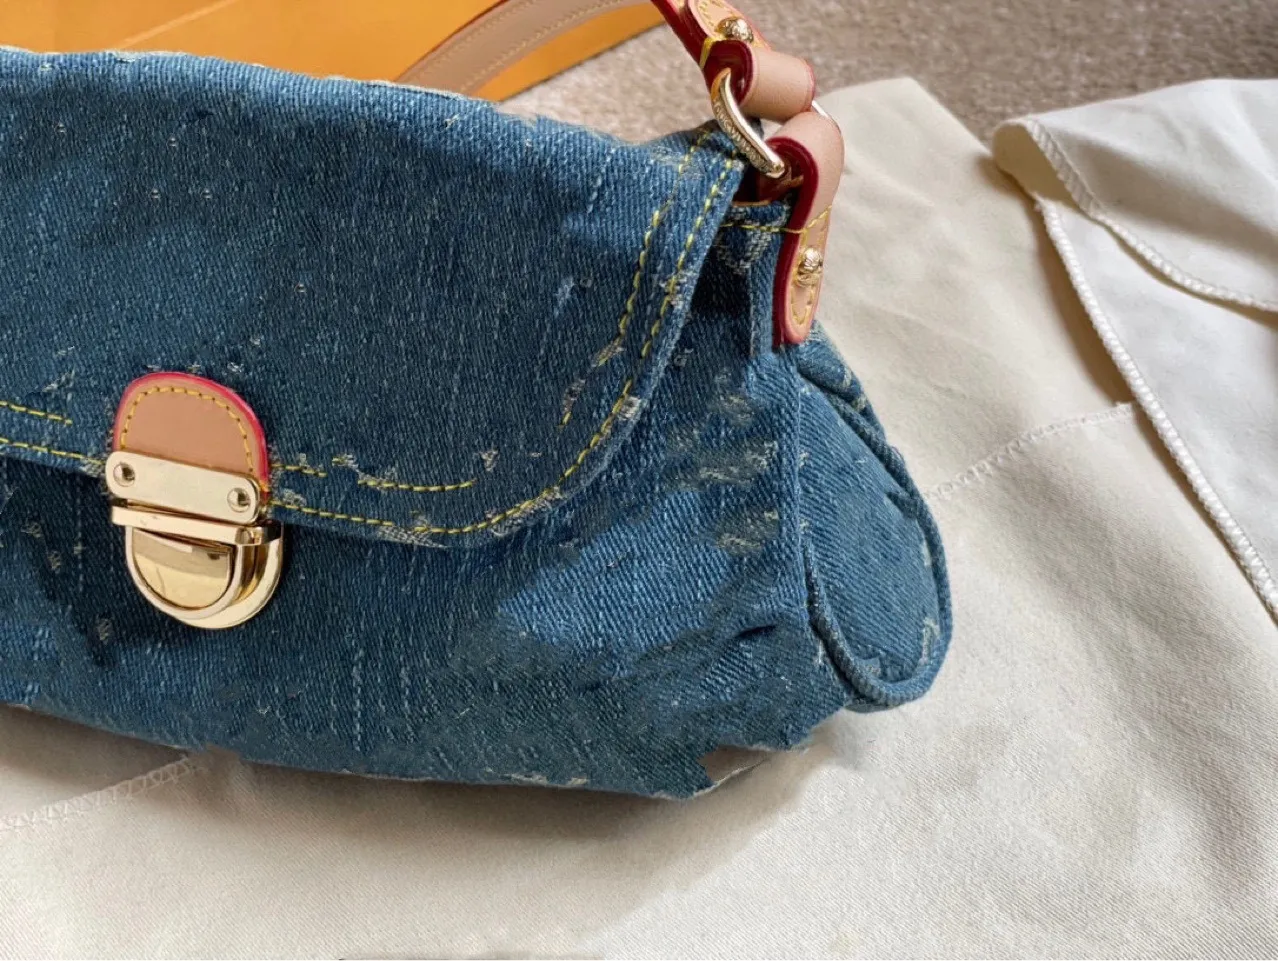 Ковбойская сумка высокого класса для старой джинсовой сумки на плечах винтаж багет